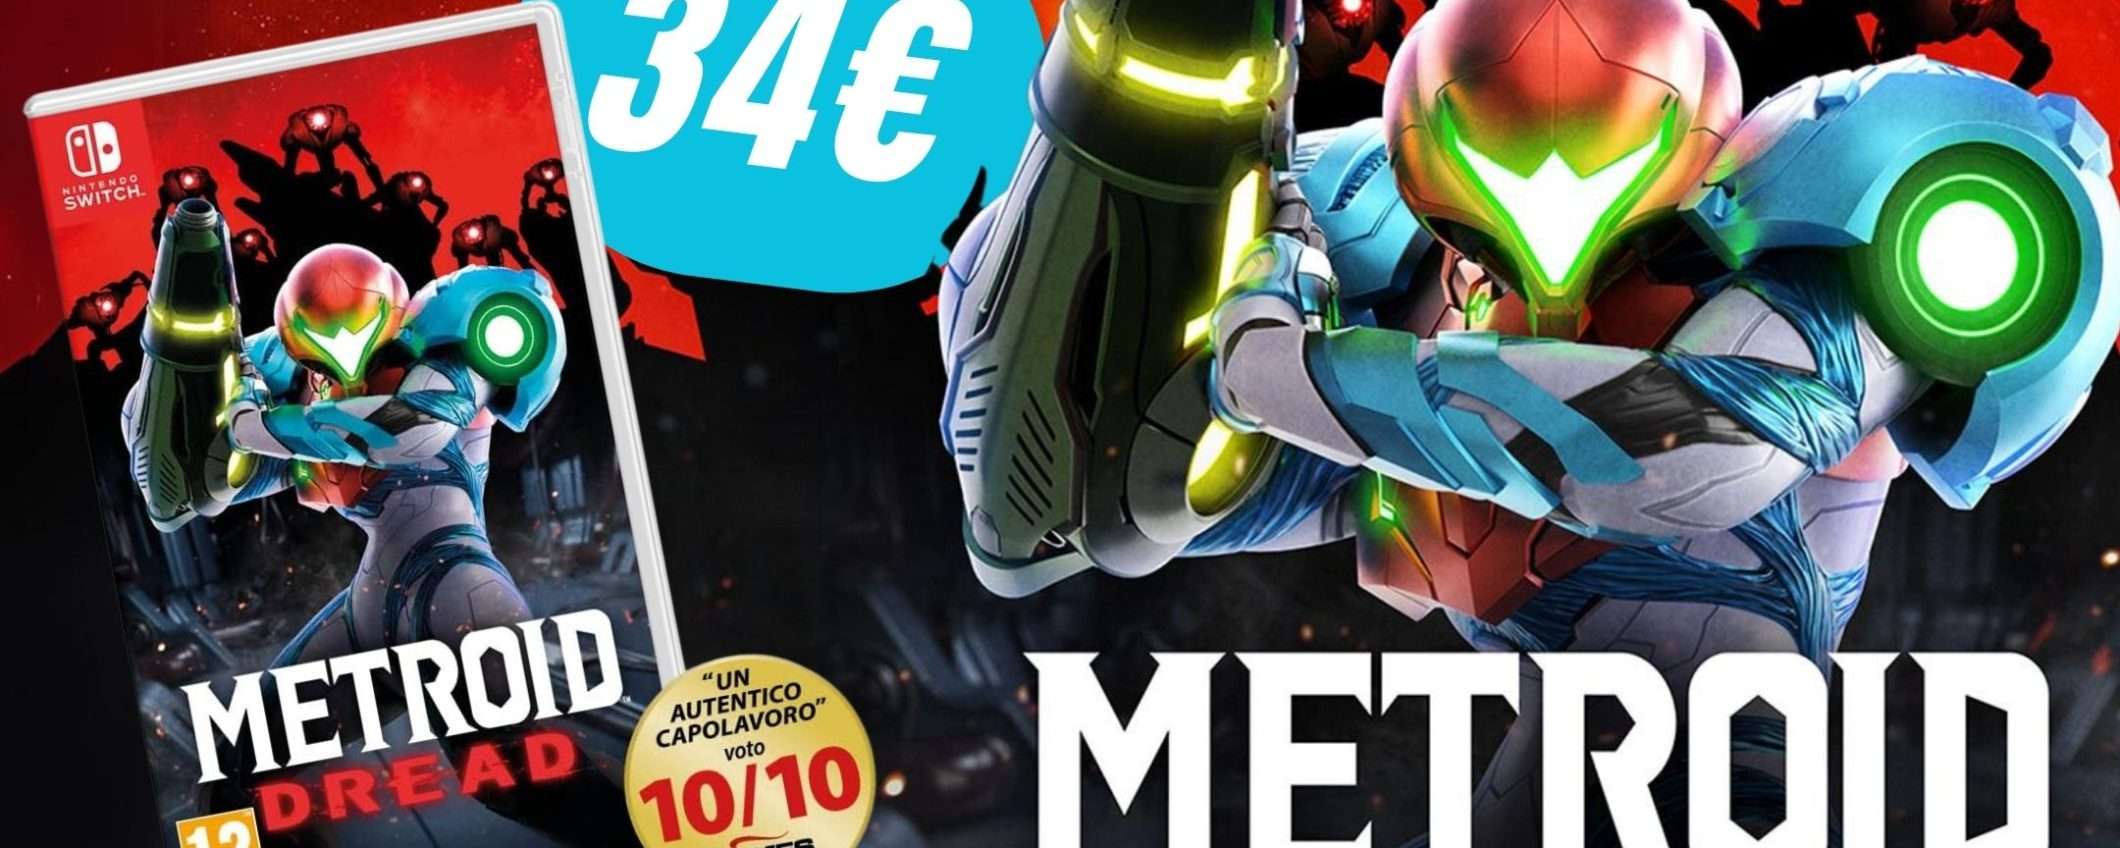 Metroid Dread: il capolavoro di Nintendo Switch CROLLA a soli 34€ su Amazon!